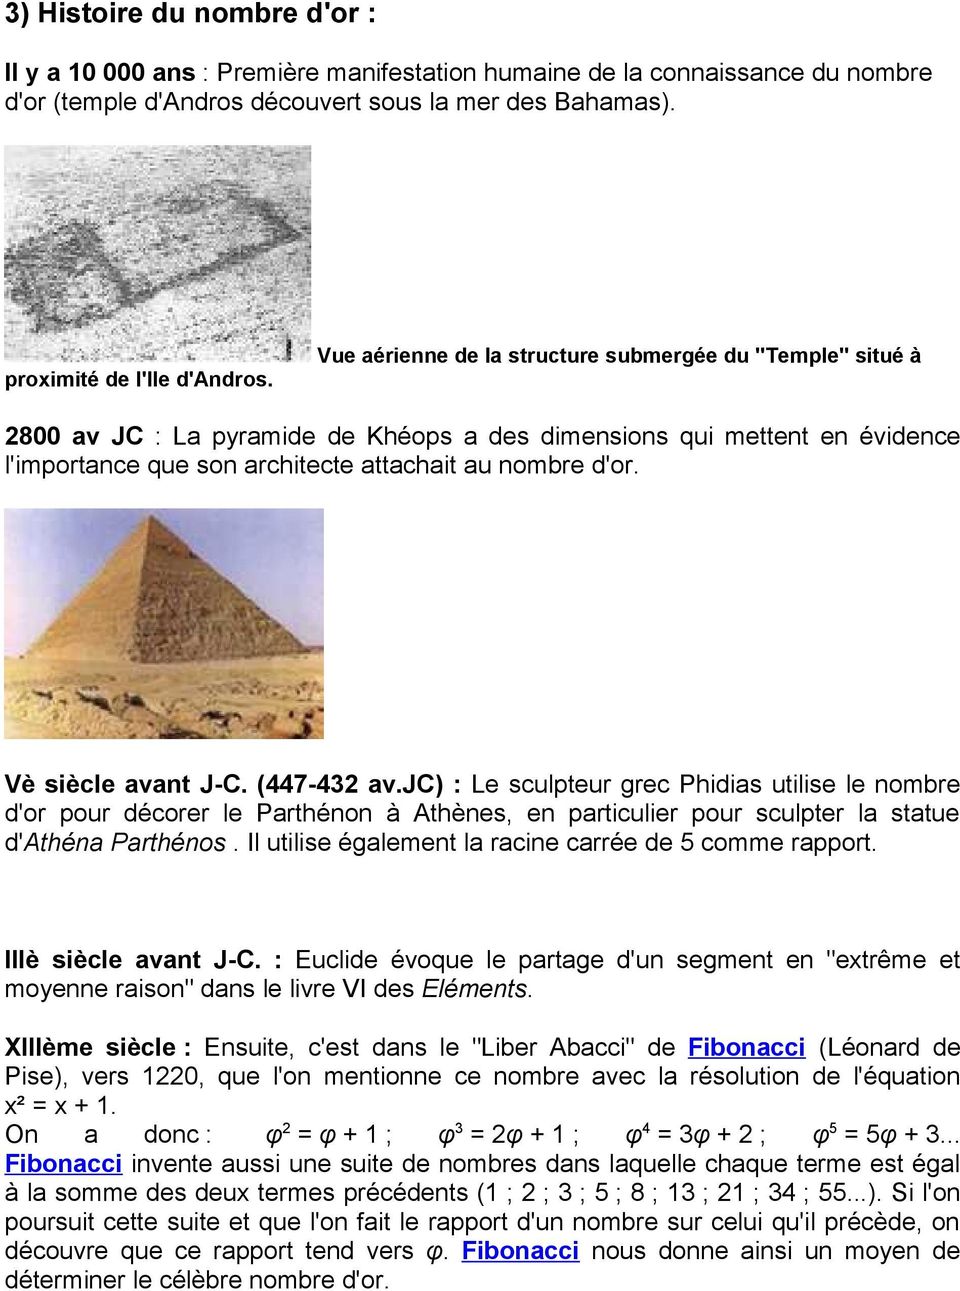 2800 av JC : La pyramide de Khéops a des dimensions qui mettent en évidence l'importance que son architecte attachait au nombre d'or. Vè siècle avant J-C. (447-432 av.